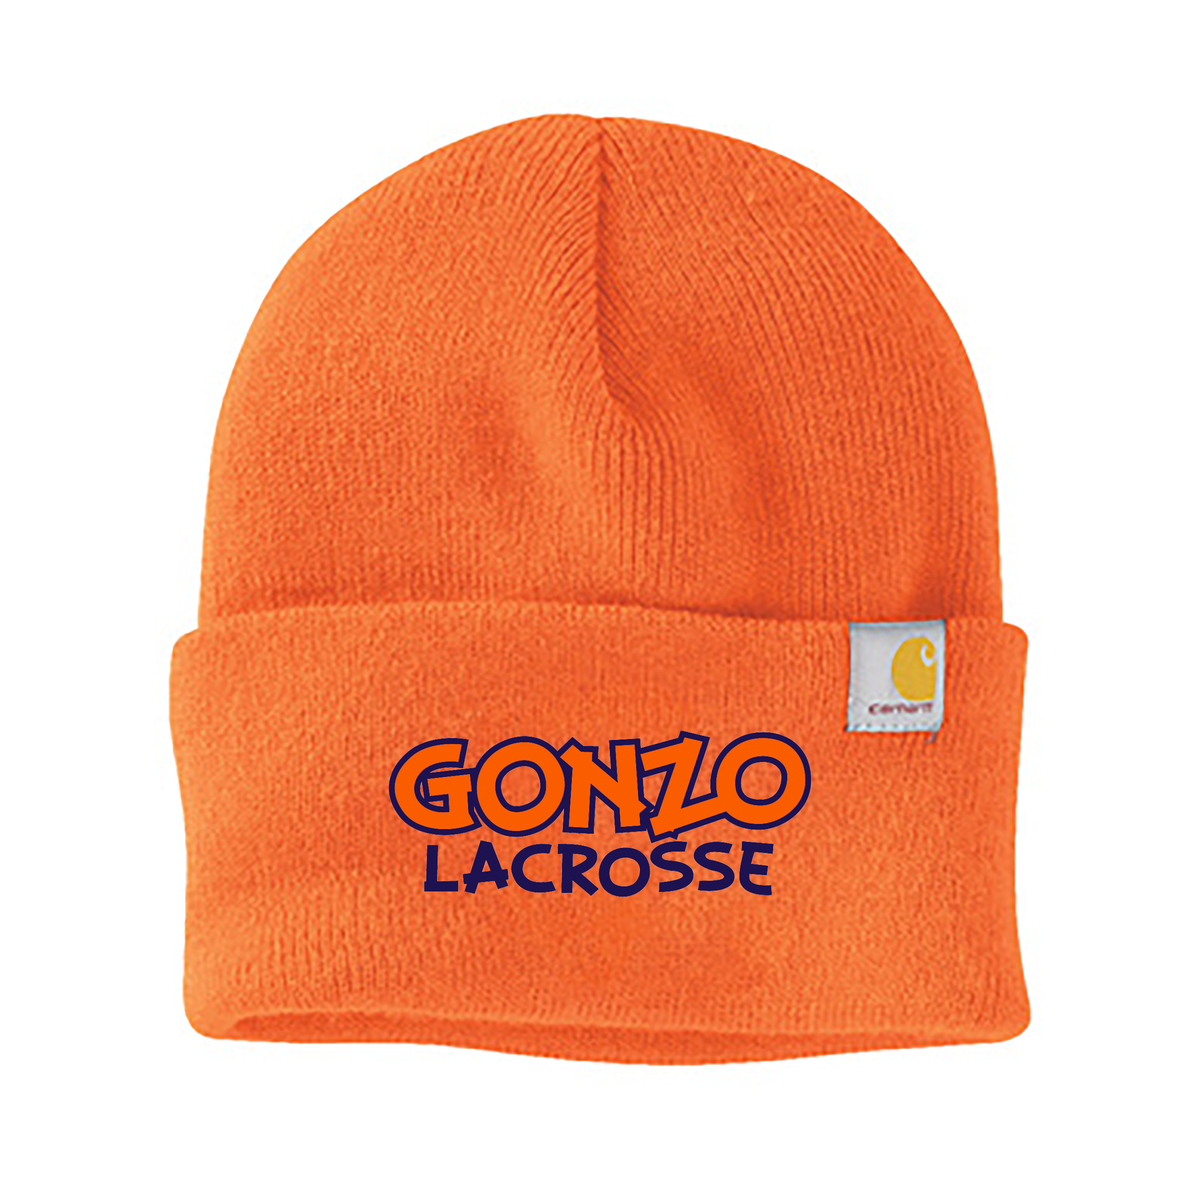 Gonzo Lacrosse Carhartt Beanie